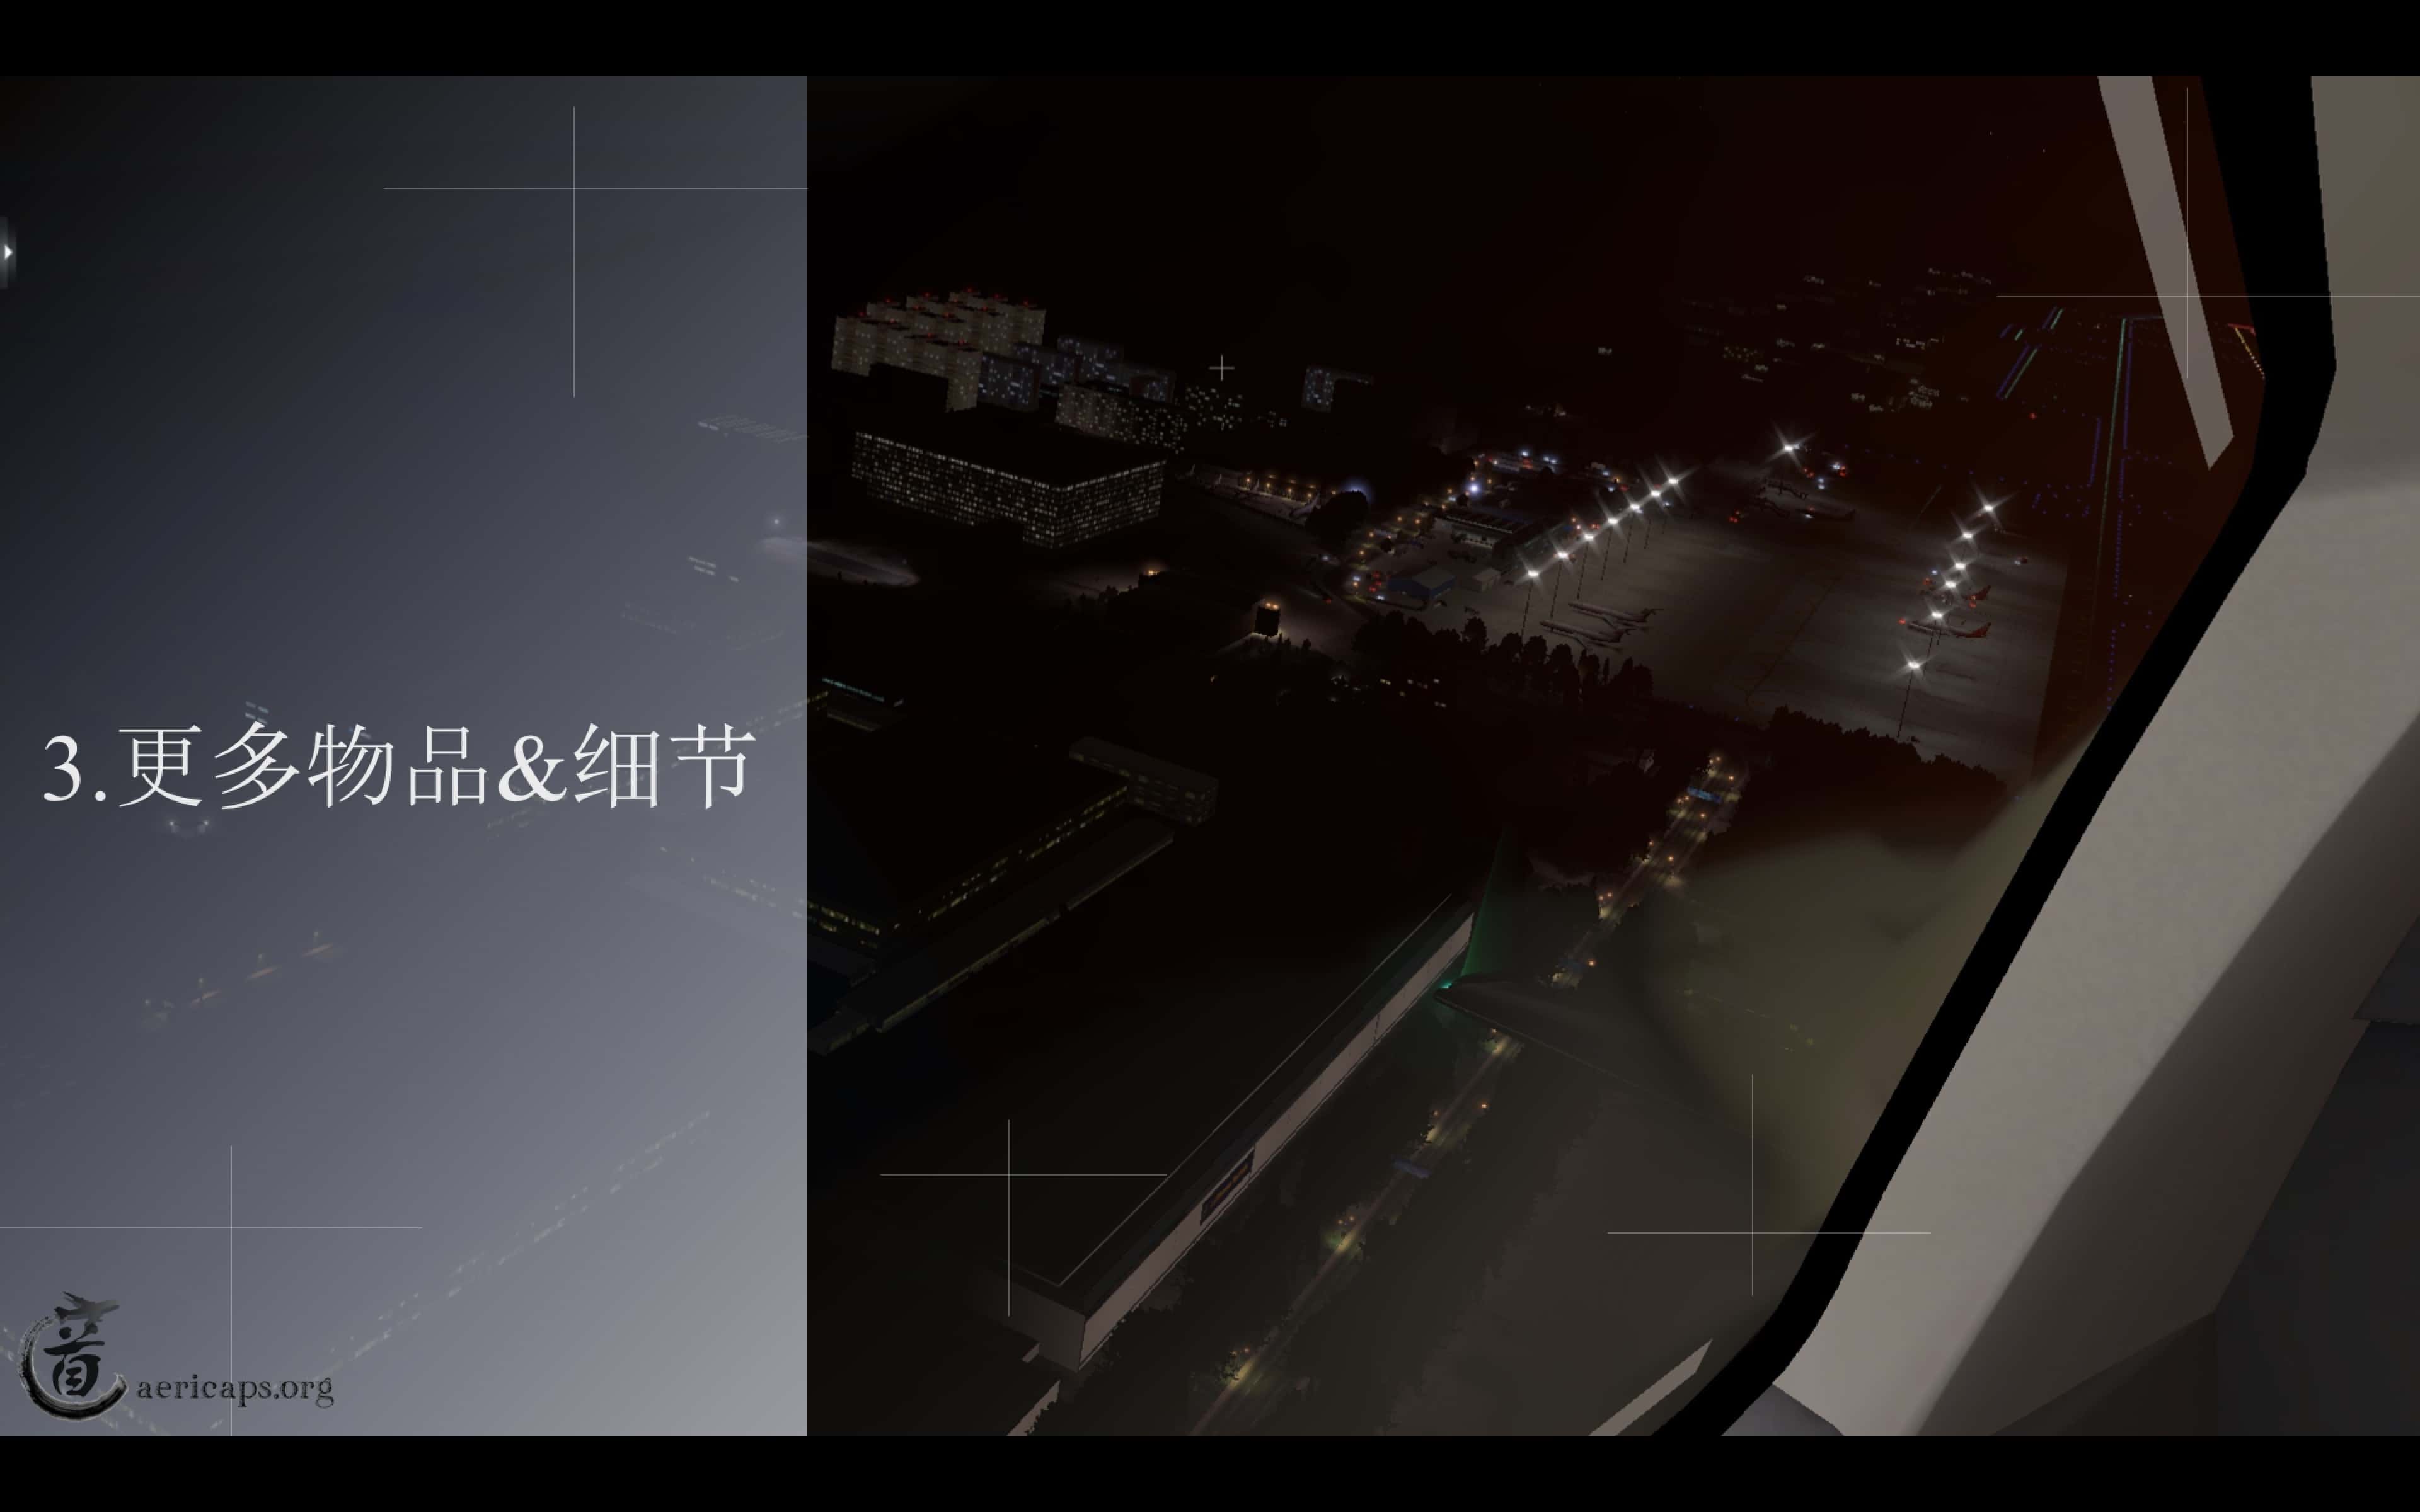 【预告】北京南苑机场地景宣传册-最终版-9301 